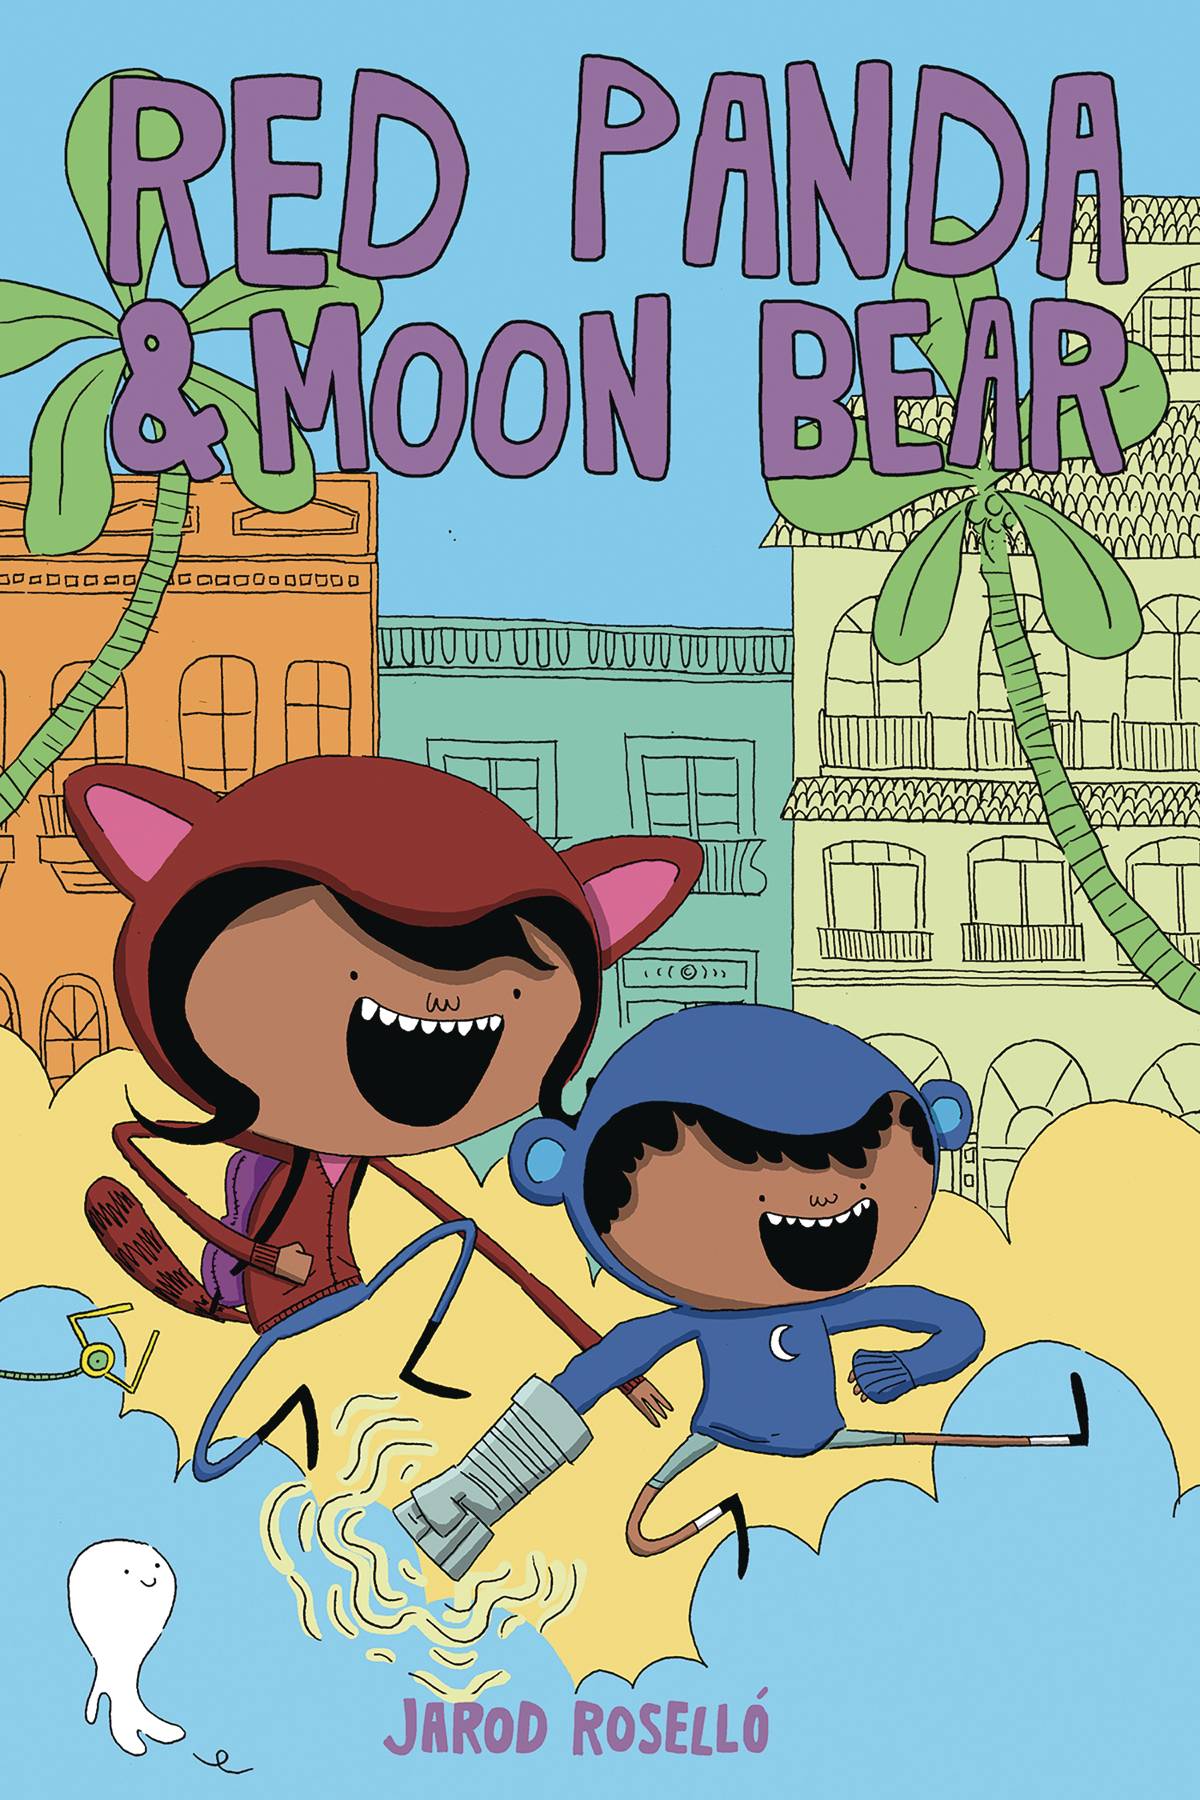 Red Panda & Moon Bear vol 1 s/c